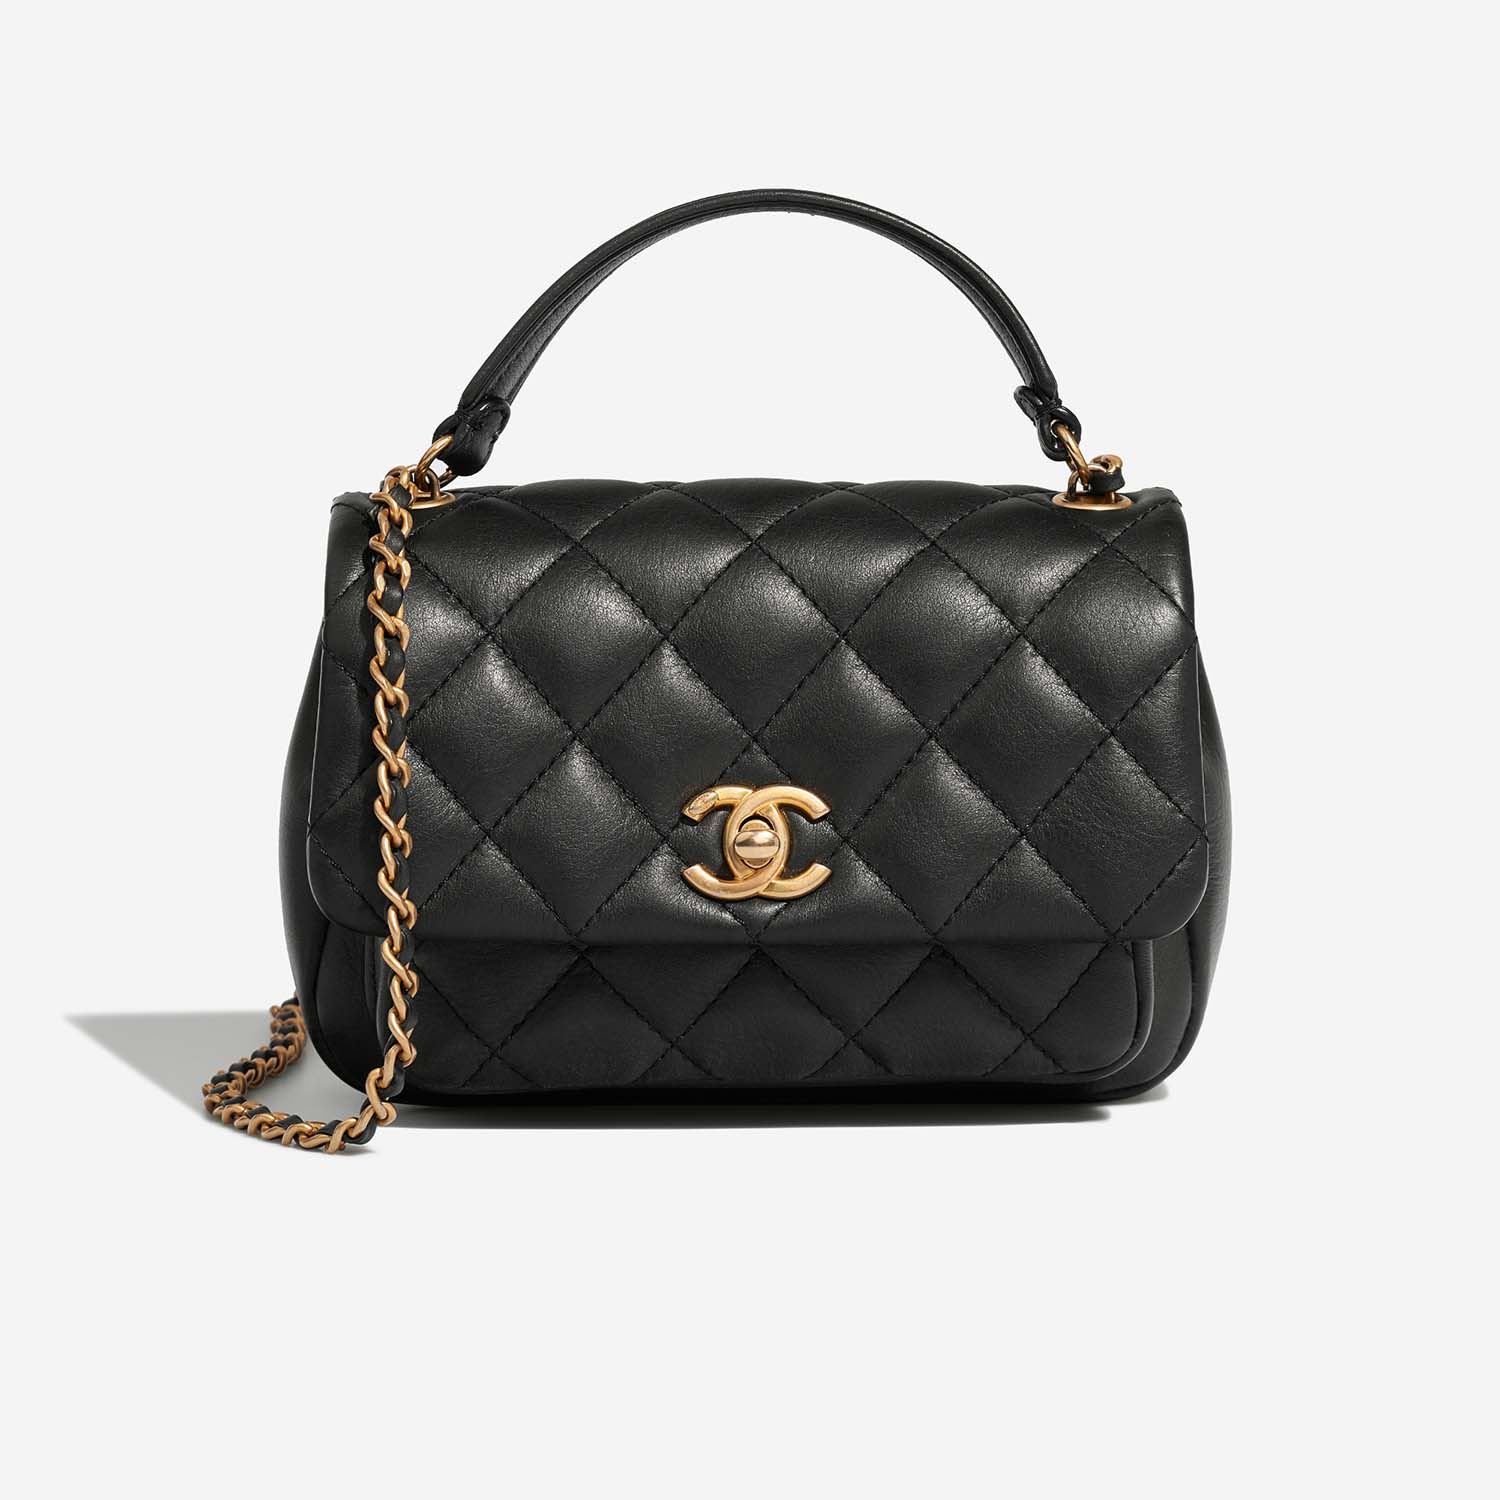 Chanel TimelessHandle Small Black Front | Verkaufen Sie Ihre Designer-Tasche auf Saclab.com